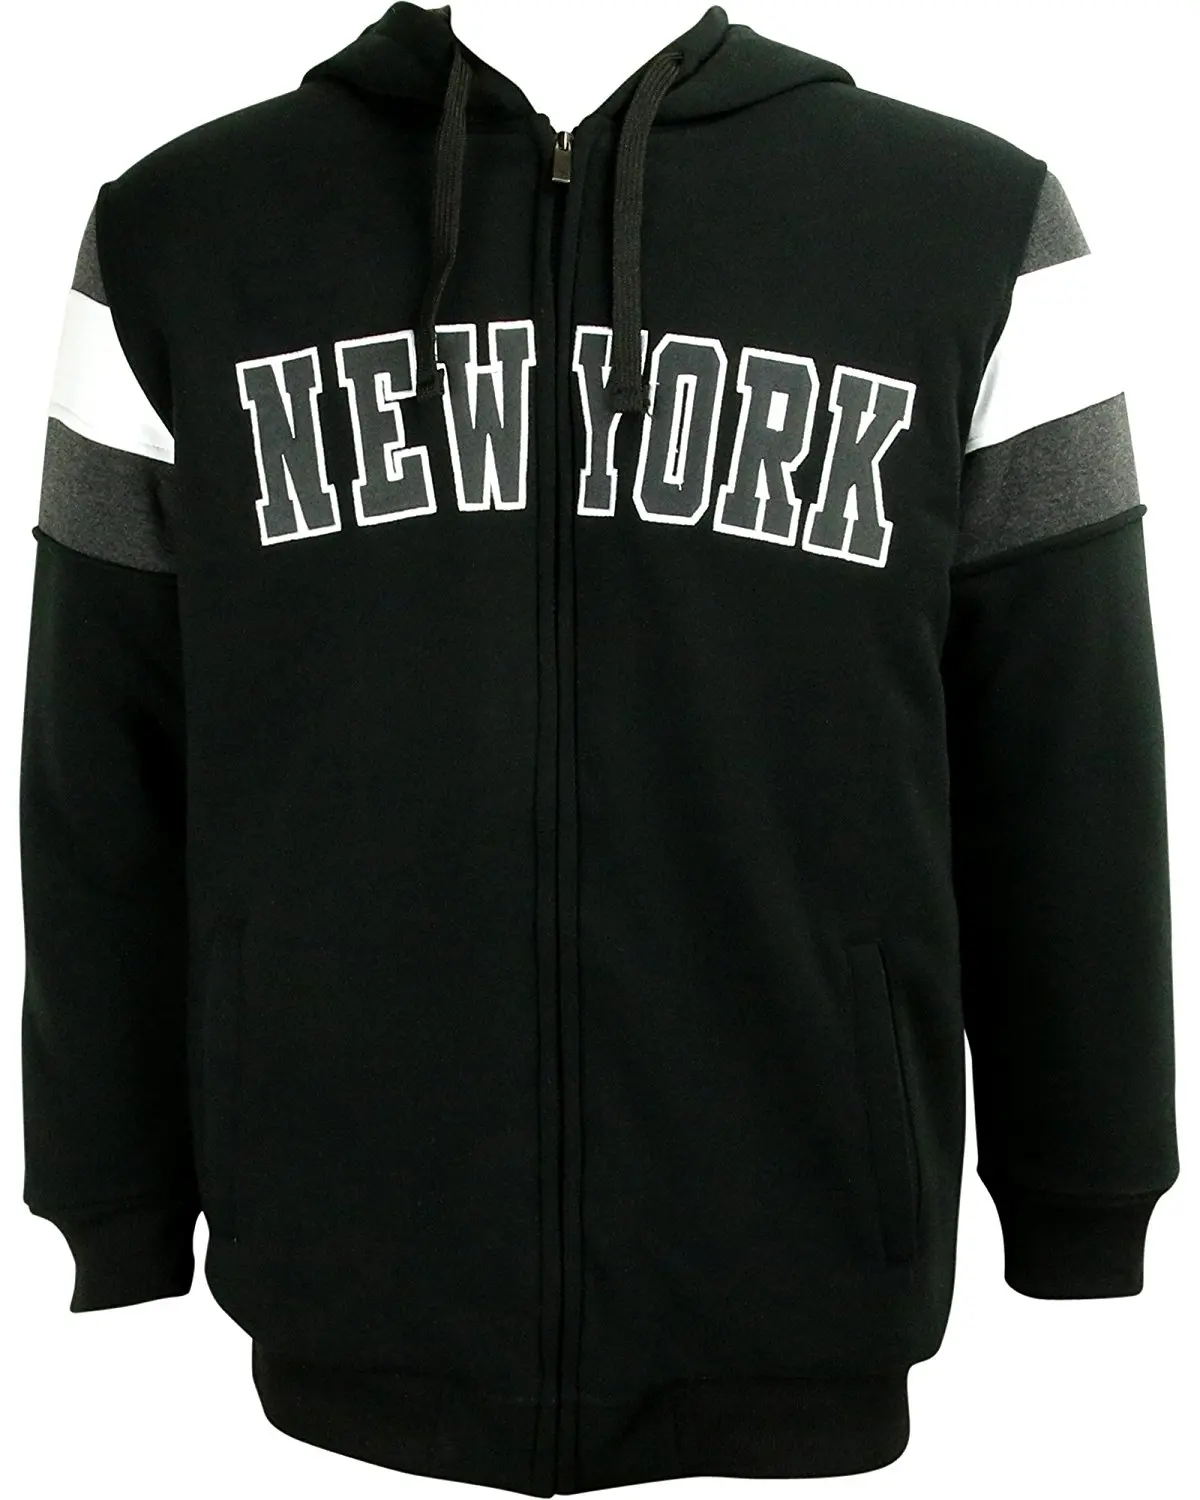 Cheap New York Varsity Jacket, find New York Varsity Jacket deals on ...